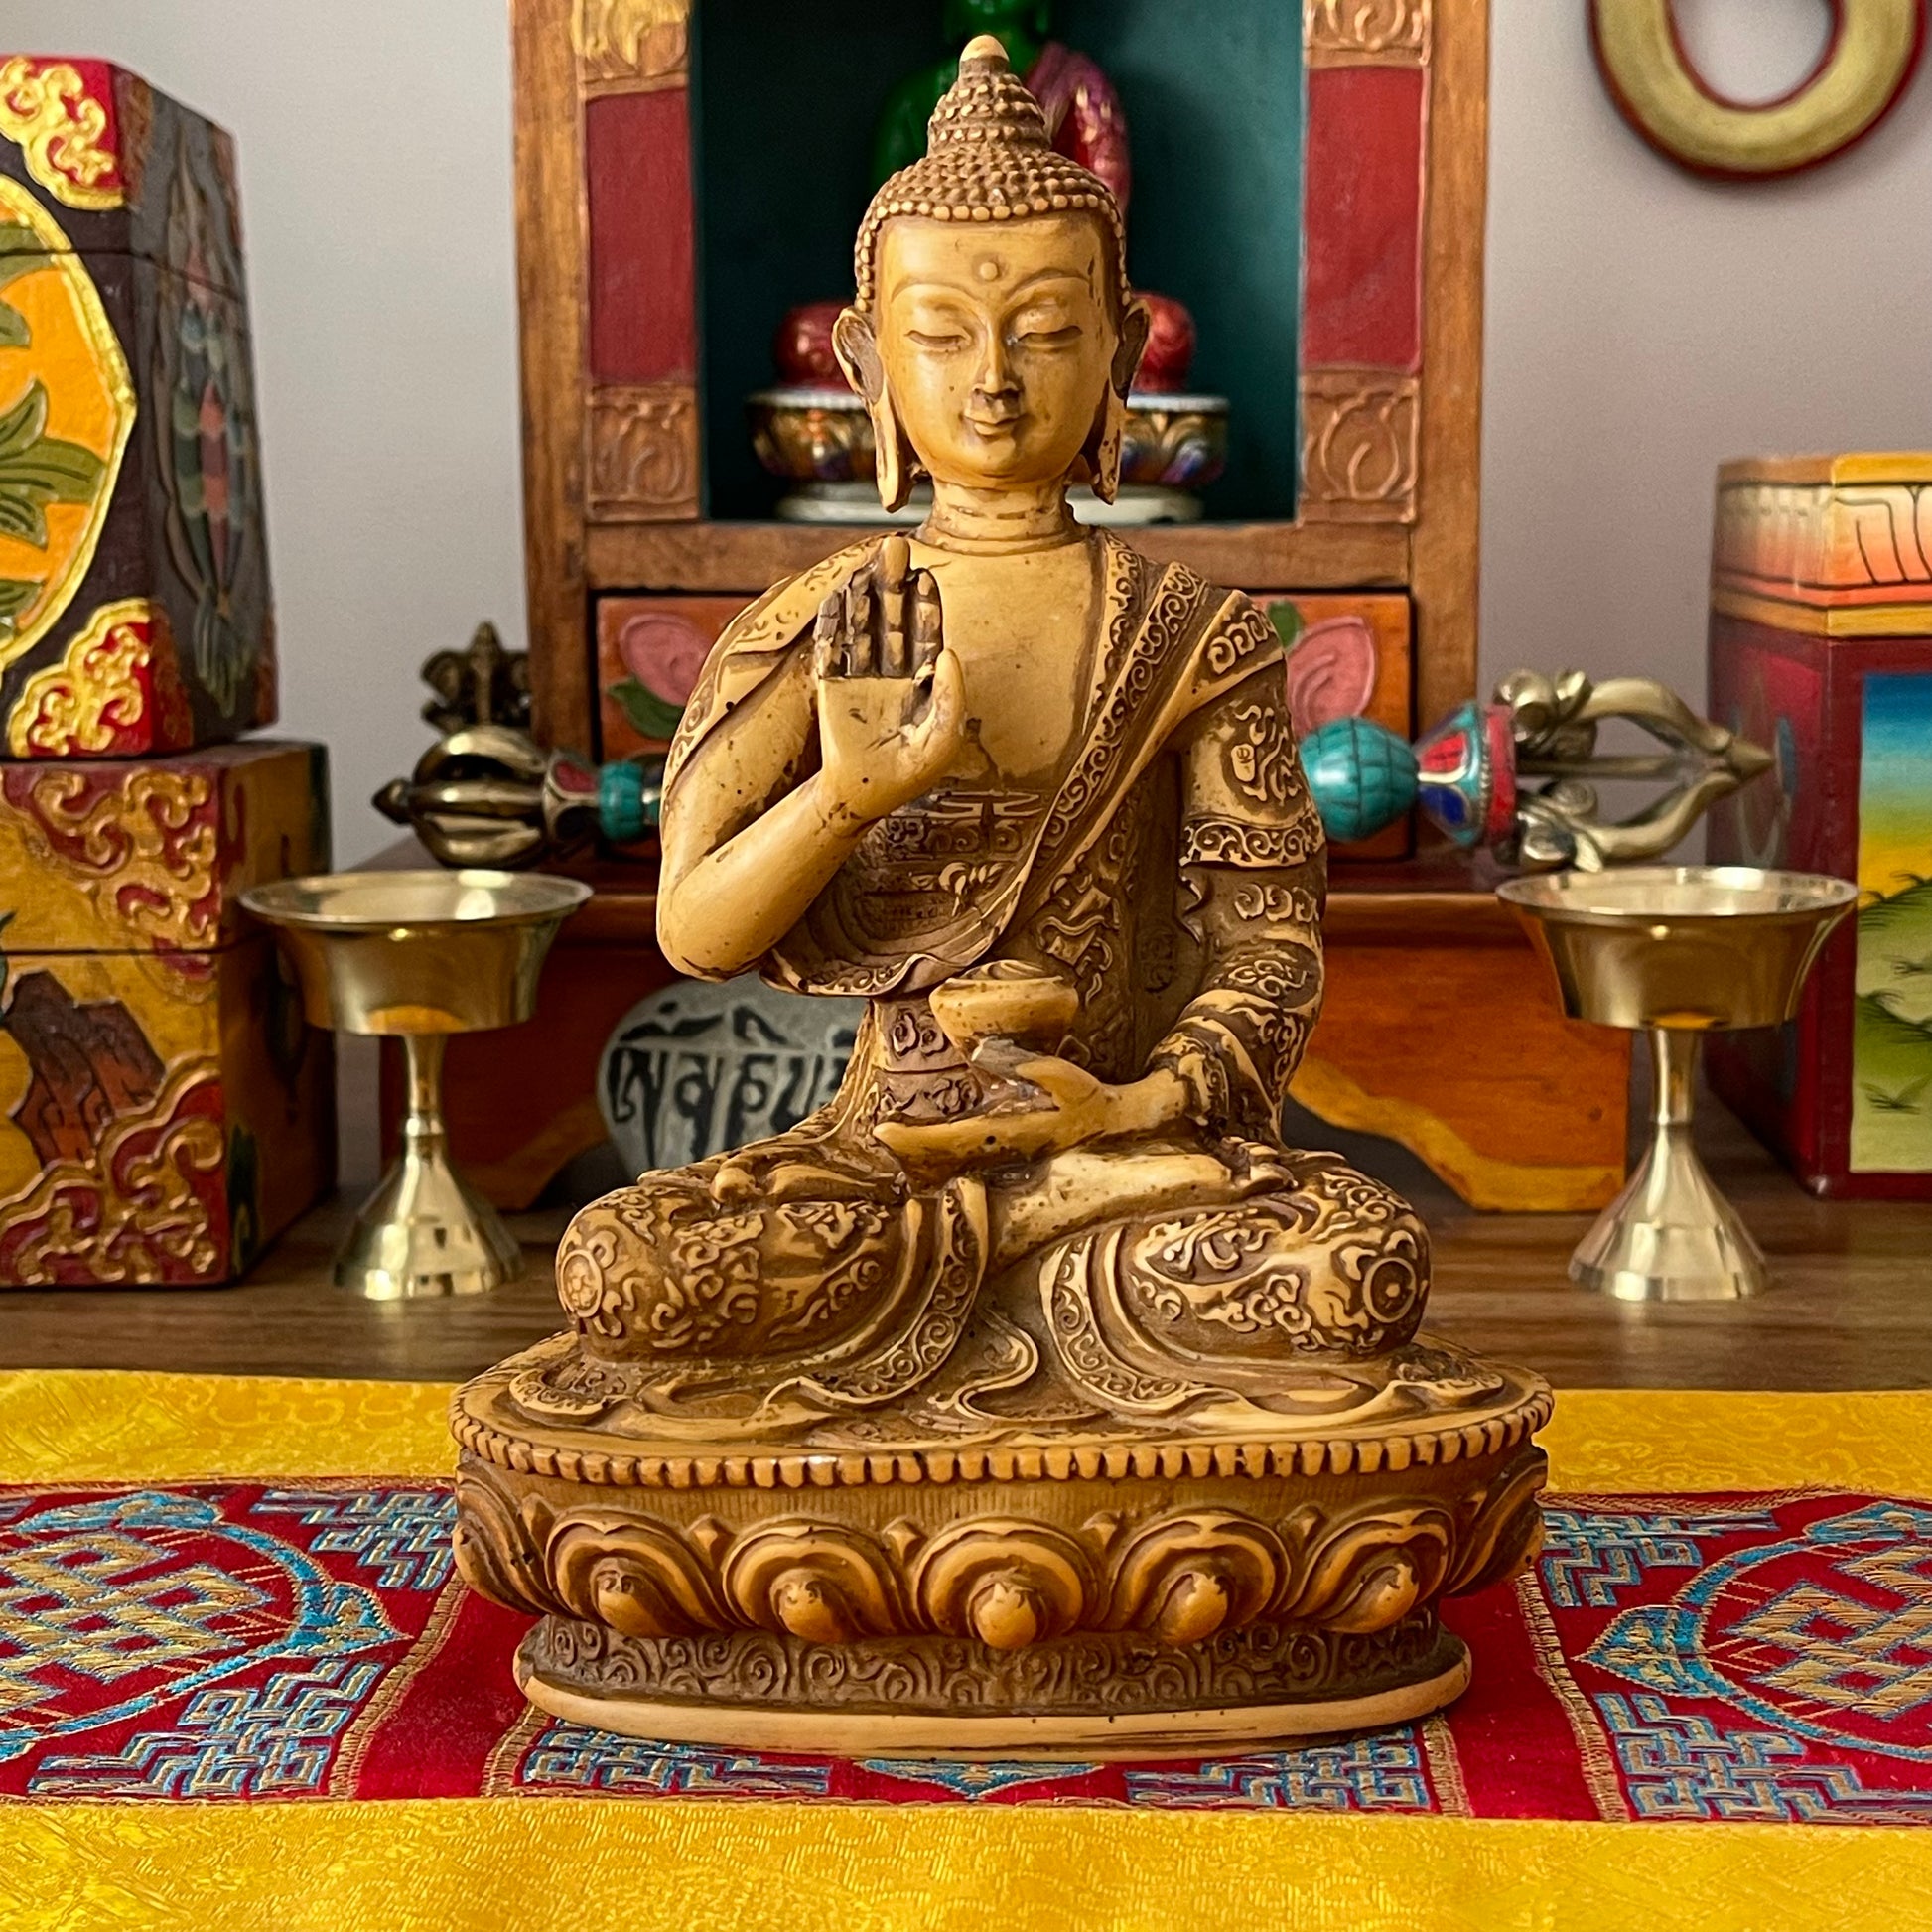 Amogasiddhi Buddha Statue 18 cm